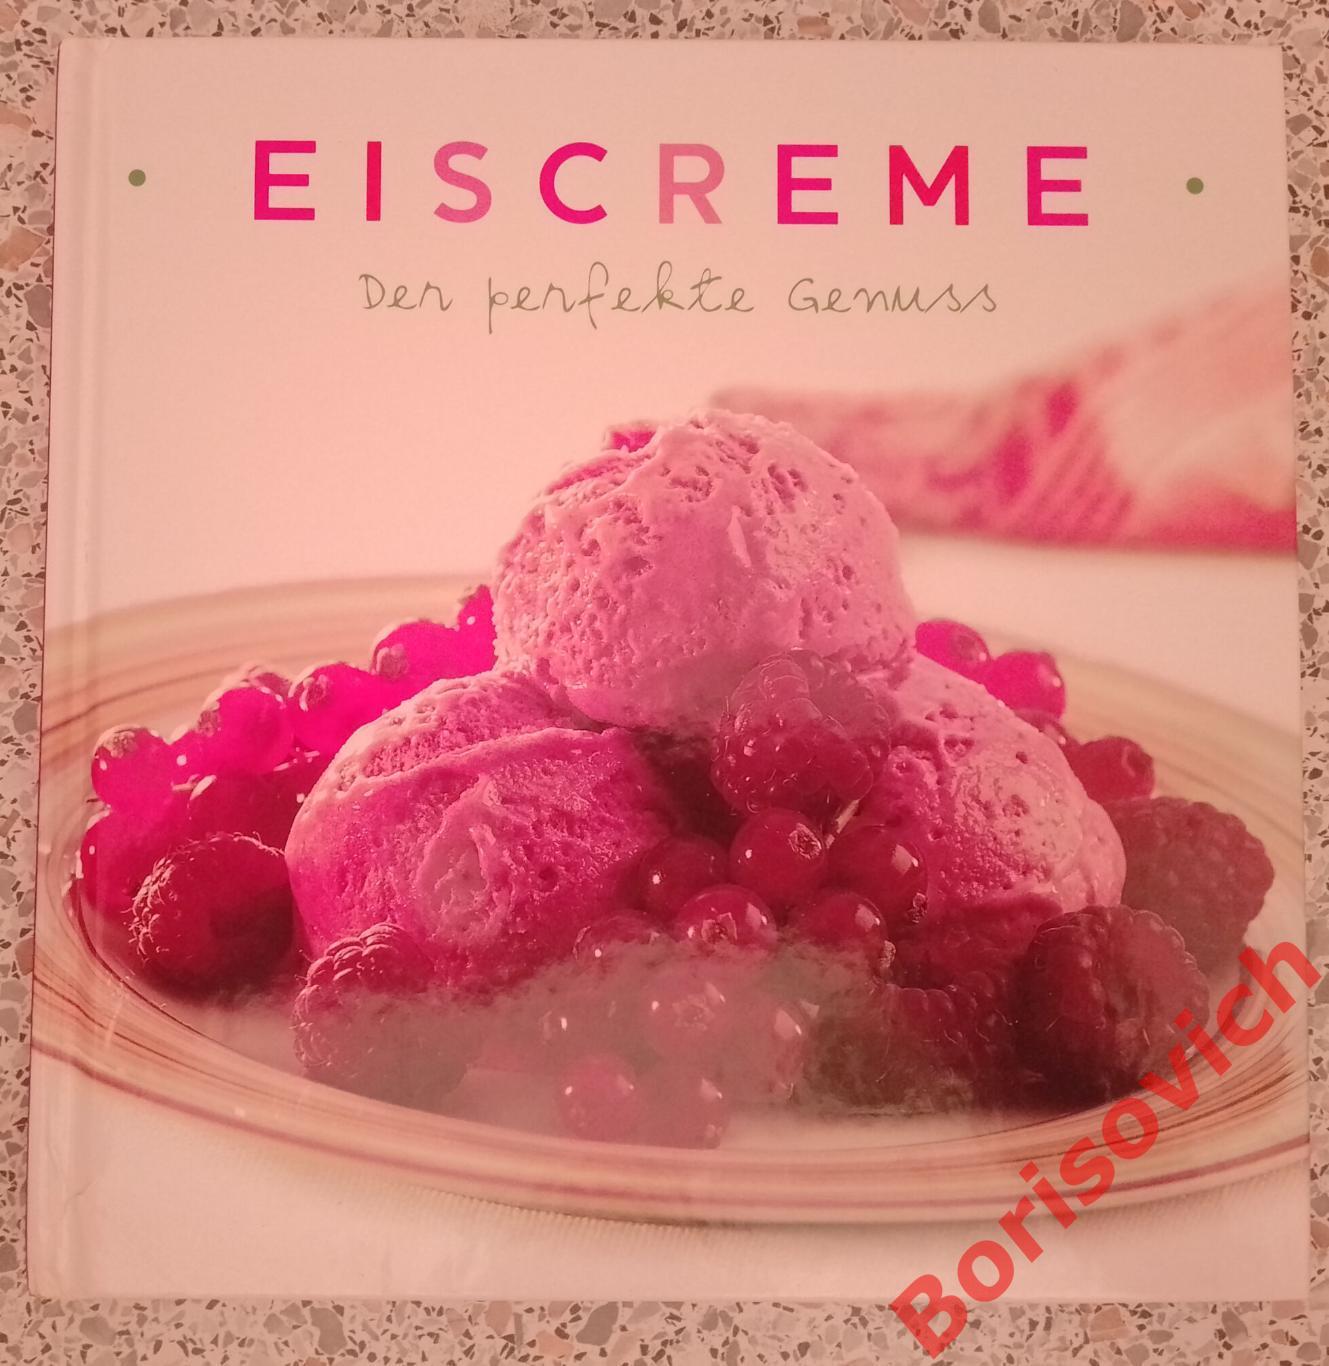 Мороженое идеальное лакомство Susanna Tee EISCREME der perfect genuss